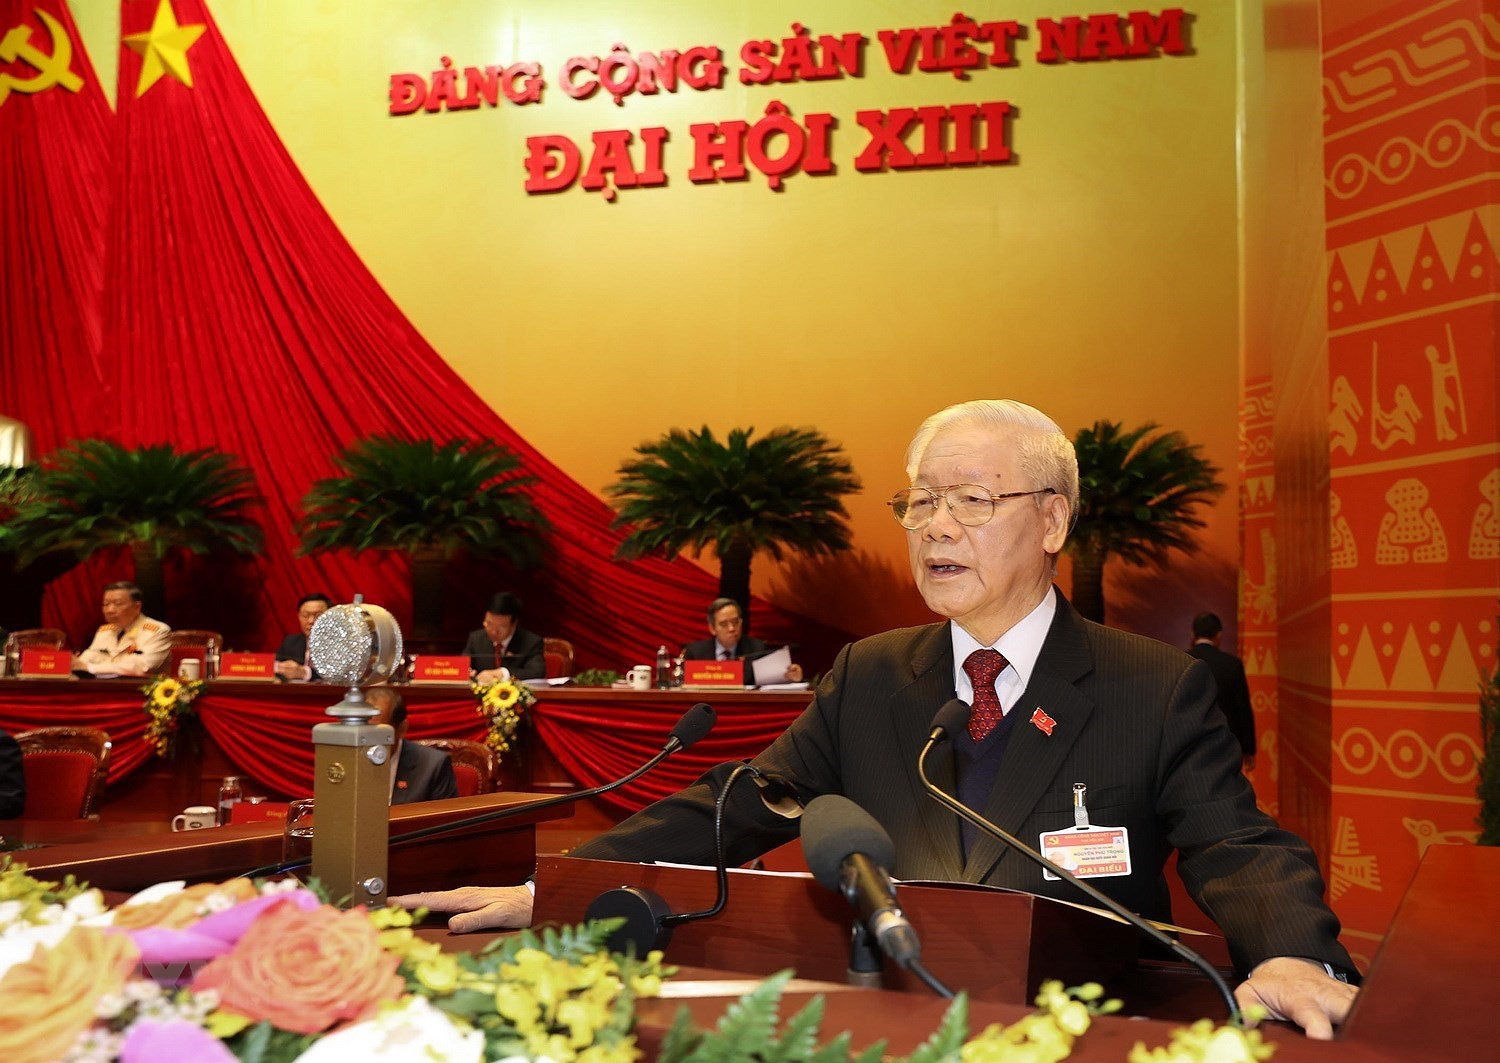 Toàn văn phát biểu của Tổng Bí thư, Chủ tịch nước Nguyễn Phú Trọng khai mạc Đại hội XIII của Đảng - Ảnh 2.